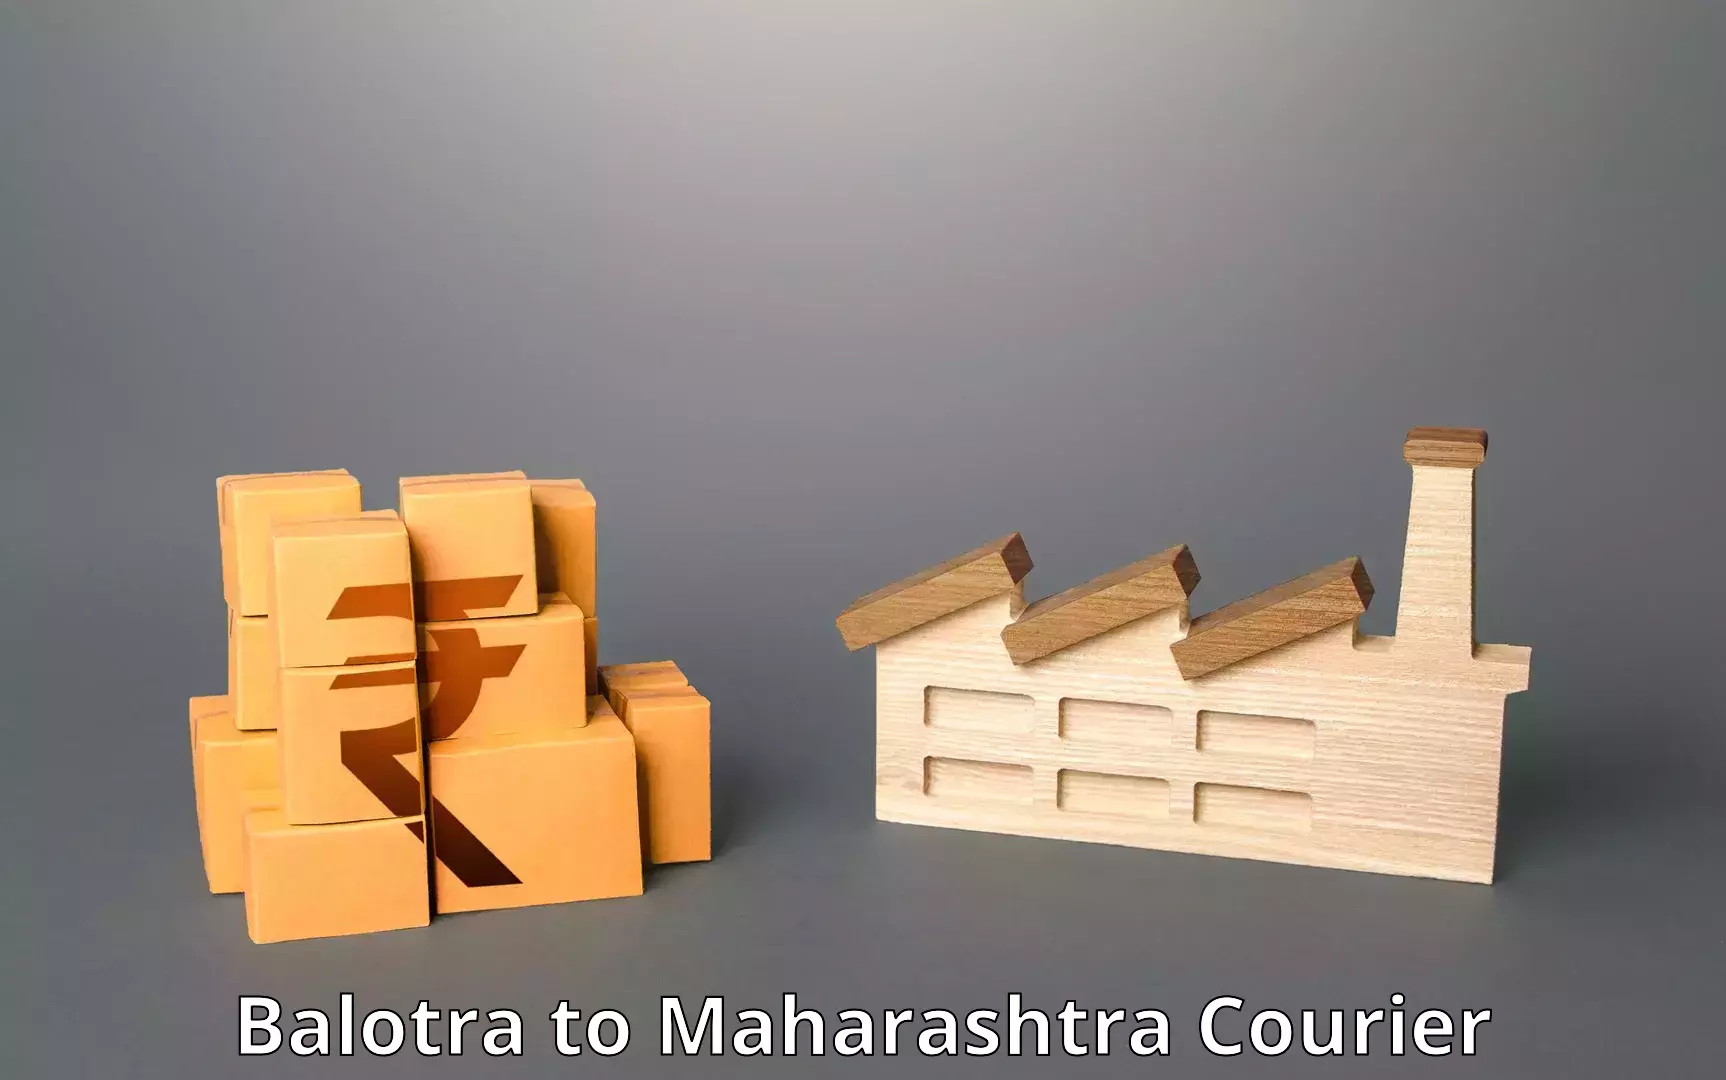 Courier service innovation Balotra to Maharashtra